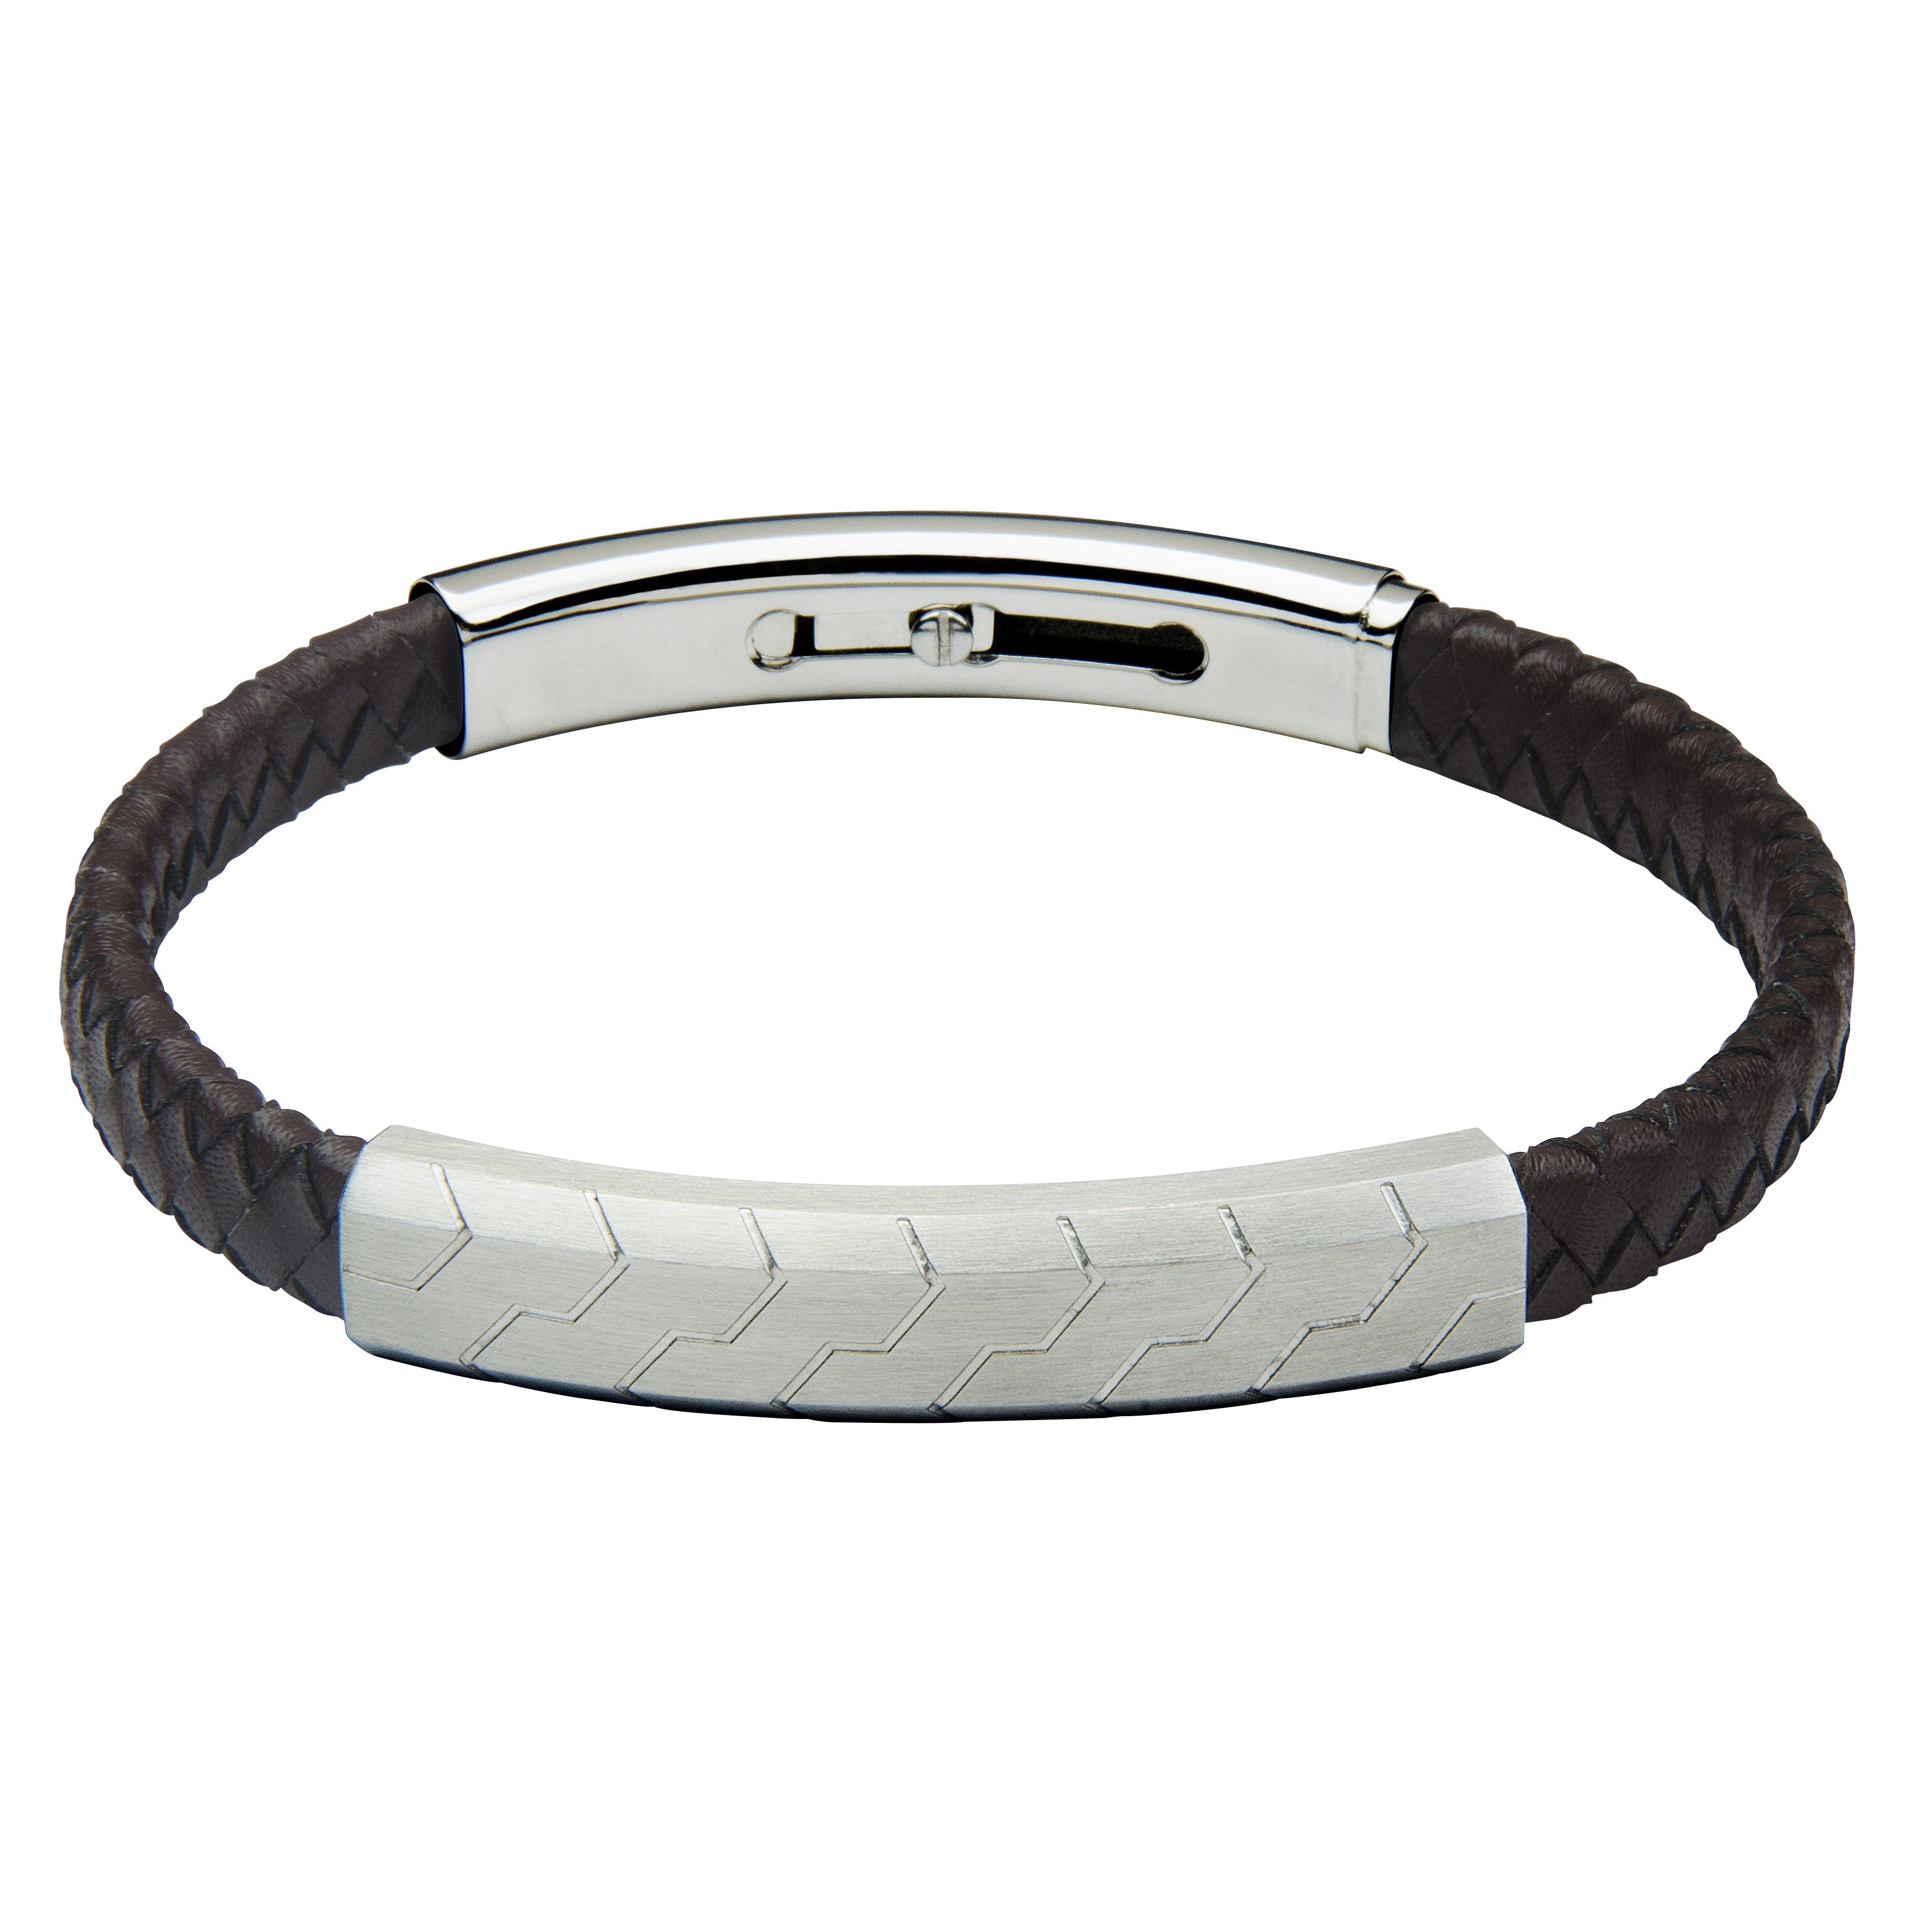 FUB13 leather and steel adjustable bracelet